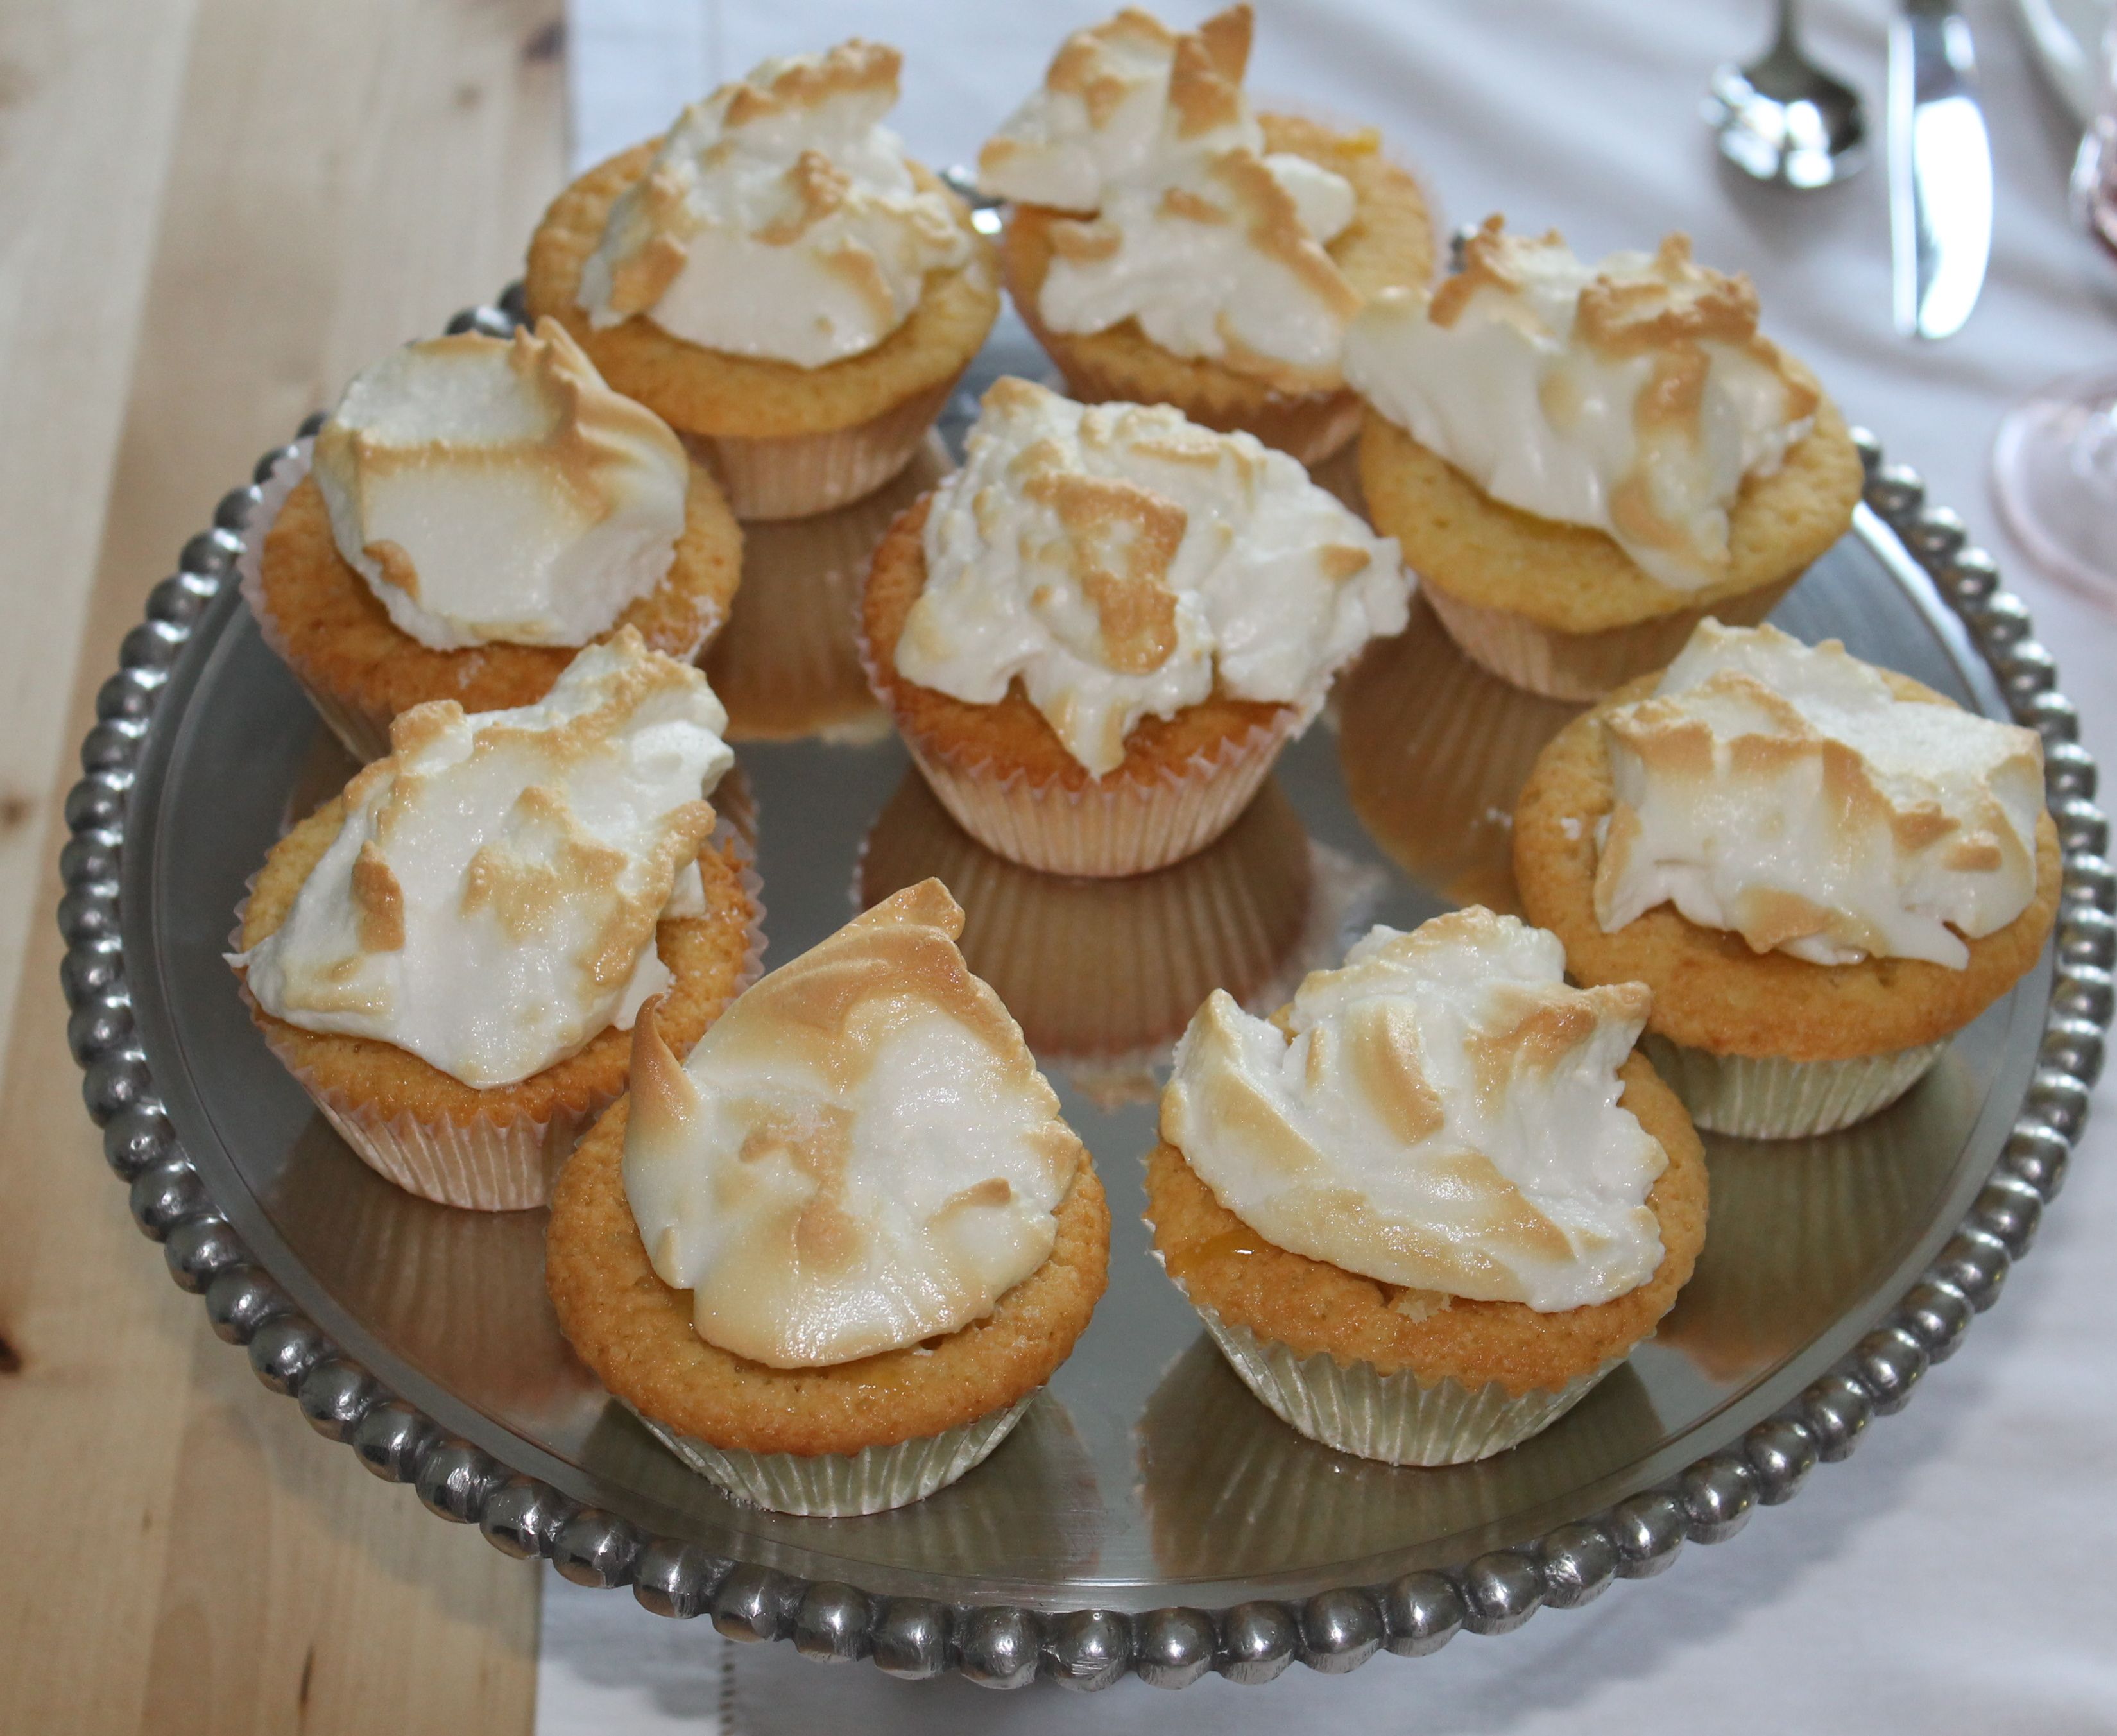 Cupcakes - Lemon Meringue Pie Cupcakes